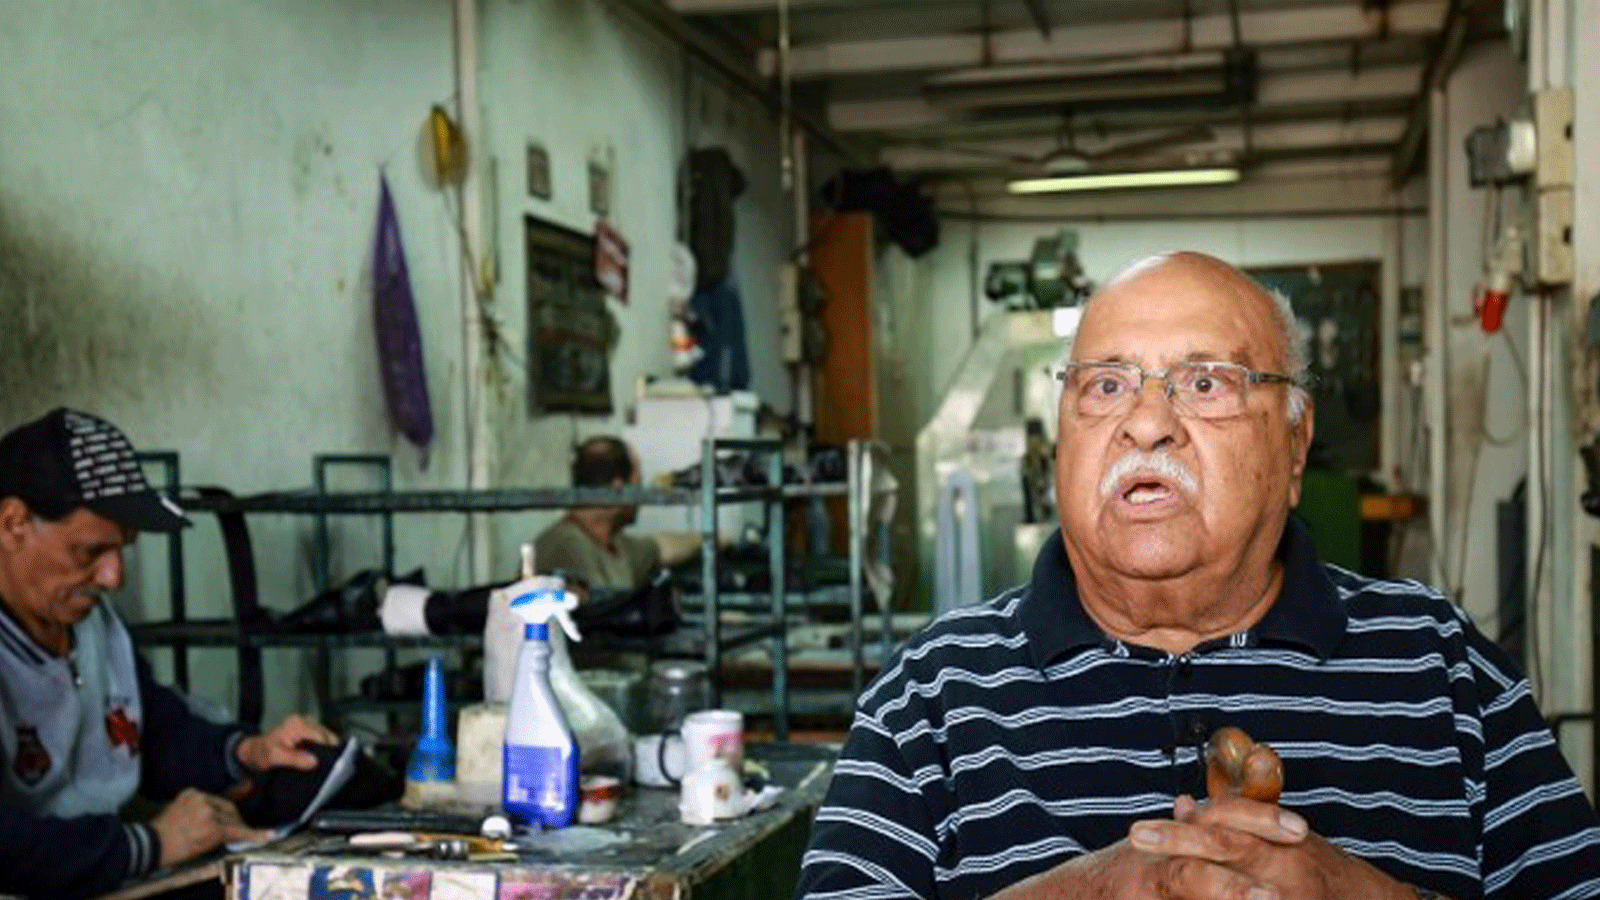 صانع الأحذية يتحدث عن تهديد الواردات الأجنبية لمهنة صناع الأحذية يدوياً في الأردن